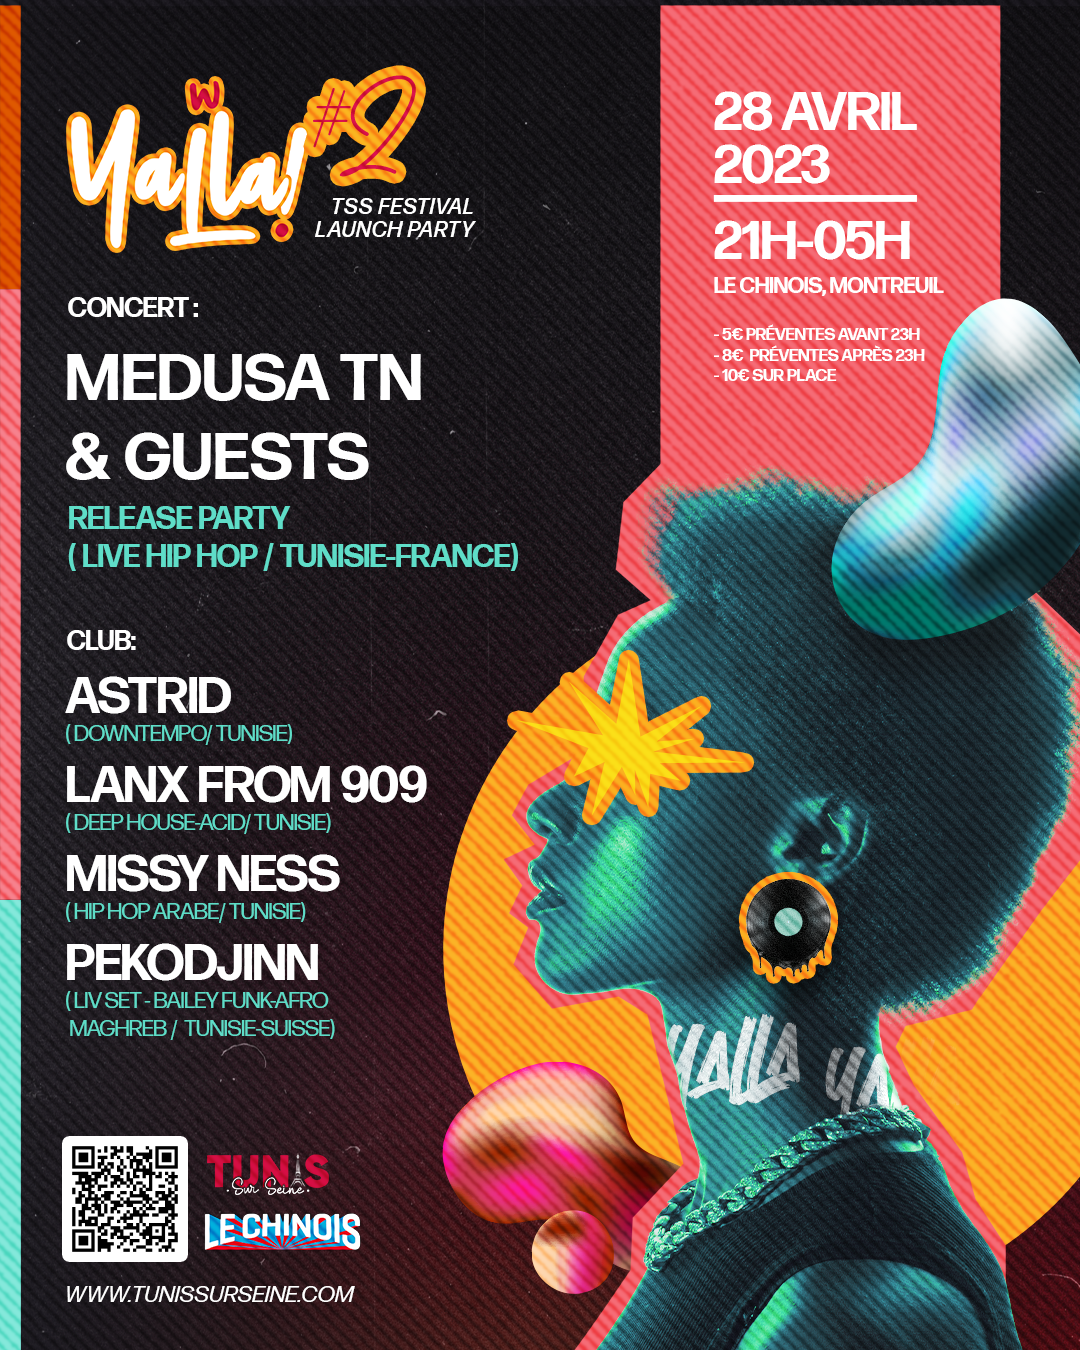 Yalla! avec Medusa TN & Guests, Missy Ness, Pekodjinn, Astrid, Lanx from 909 - Página trasera